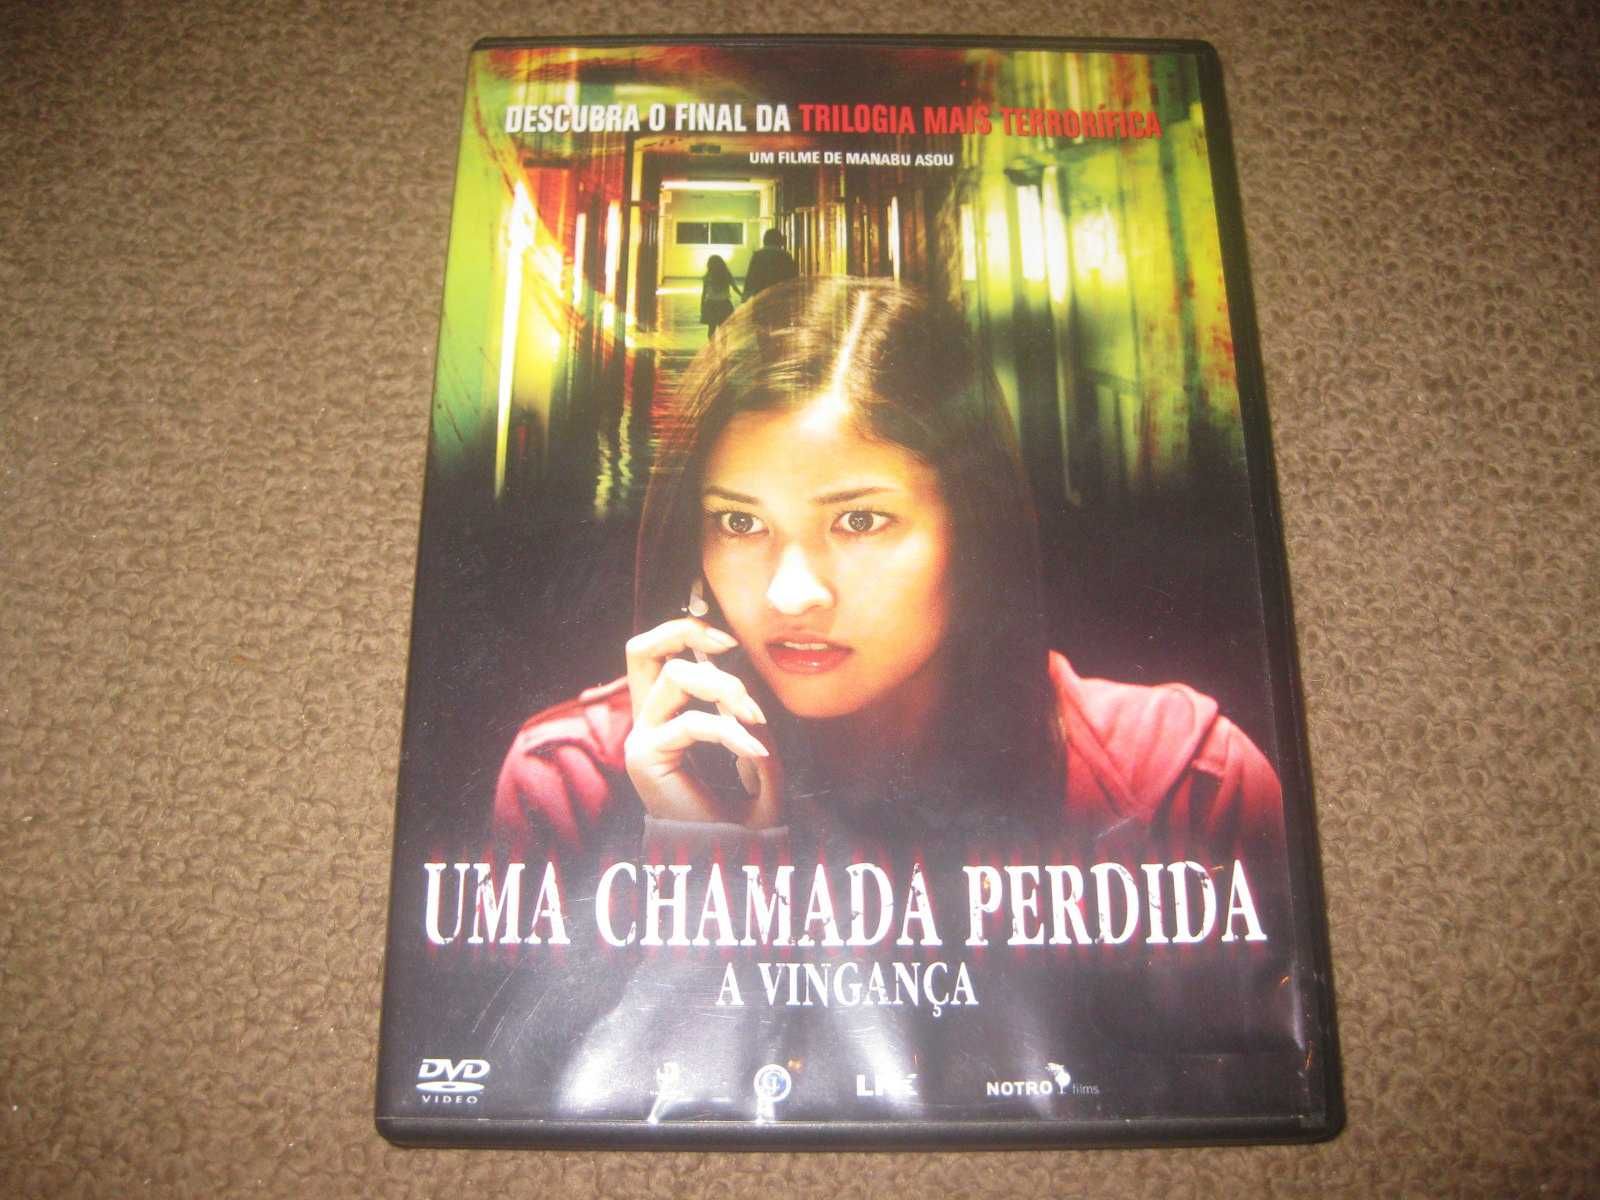 DVD "Uma Chamada Perdida: A Vingança"